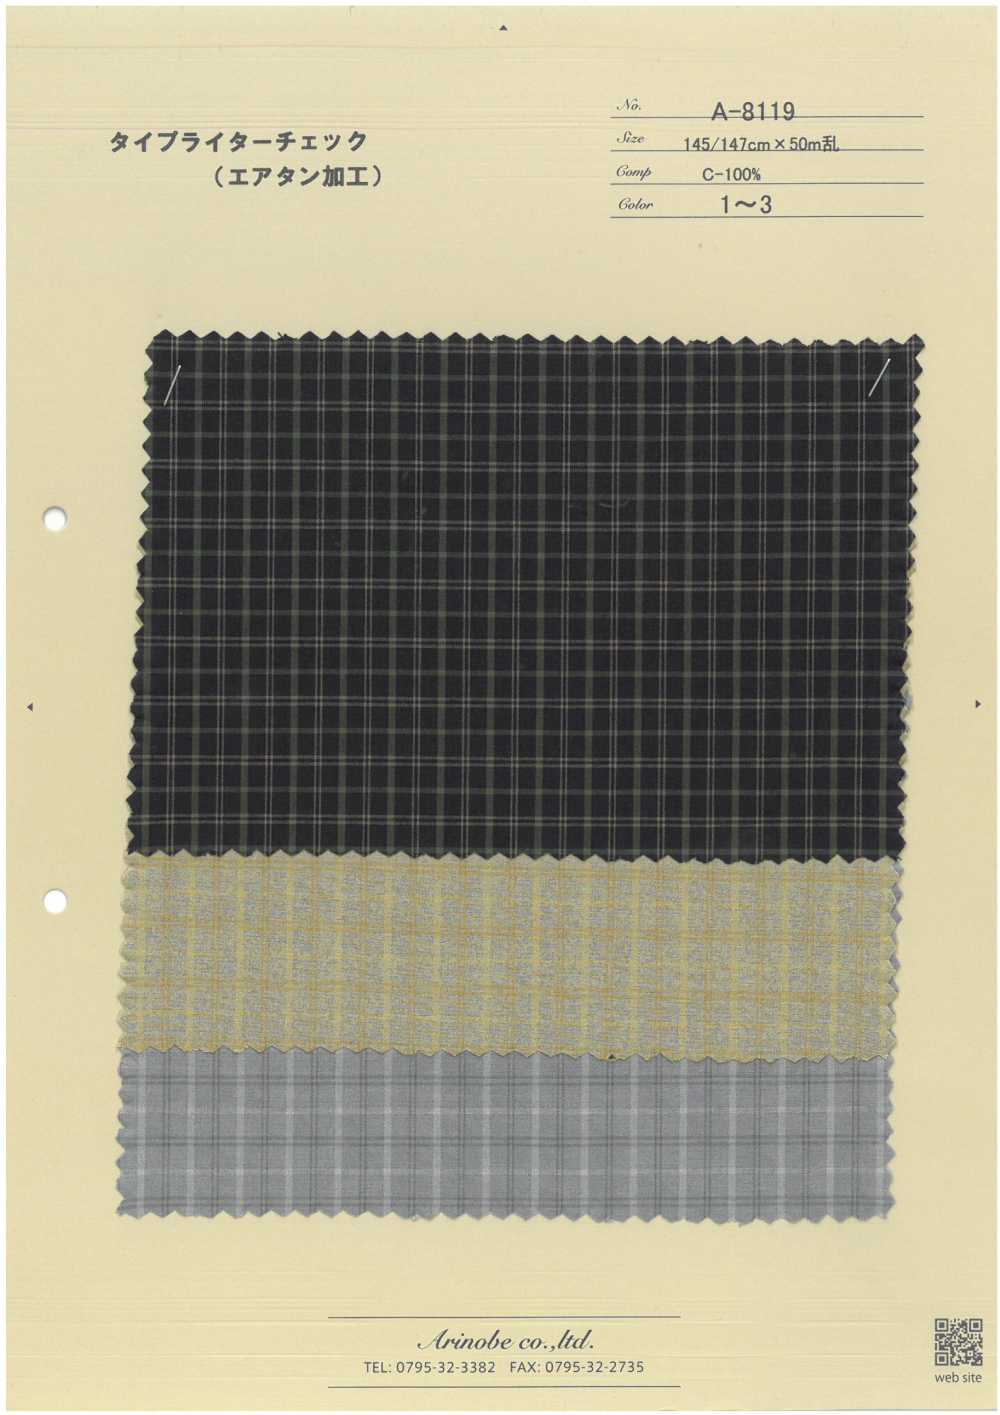 A-8119 Vải Cotton Typewritter(Xử Lý Tan Khí) ARINOBE CO., LTD.